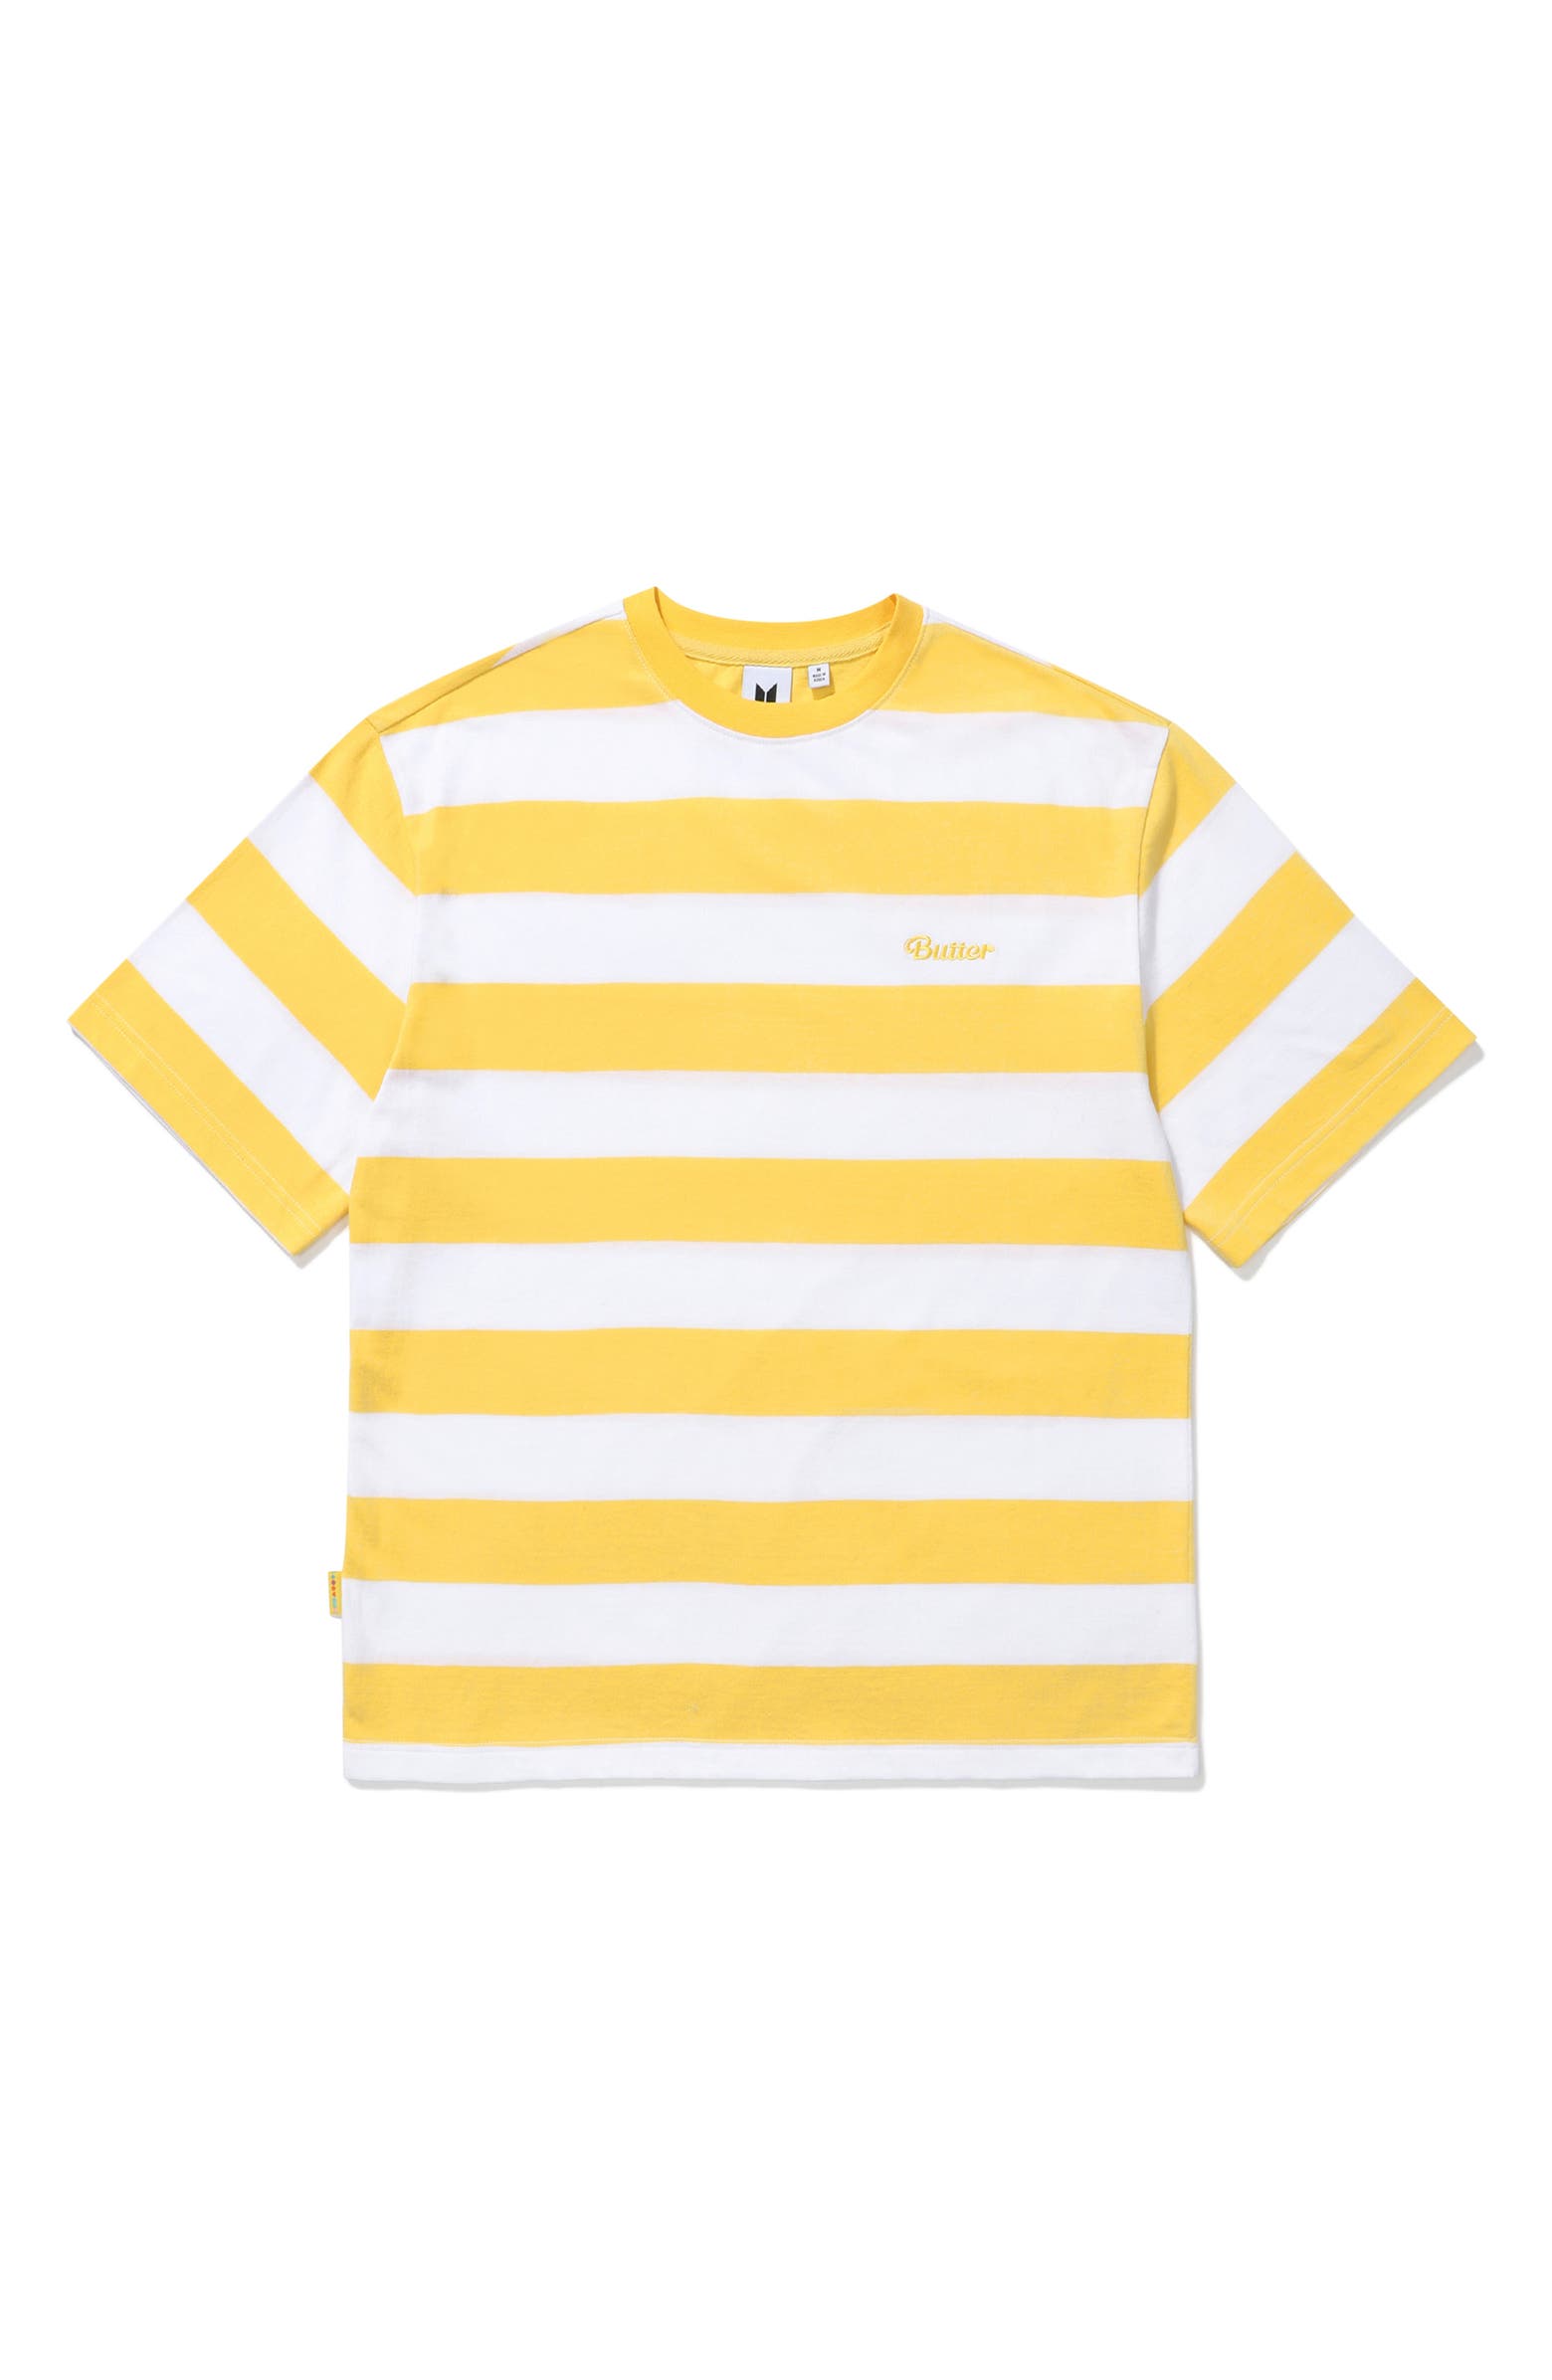 BTS Themed Merch + Gender Inclusive ‘Butter’ Striped Short Sleeve T-Shirt